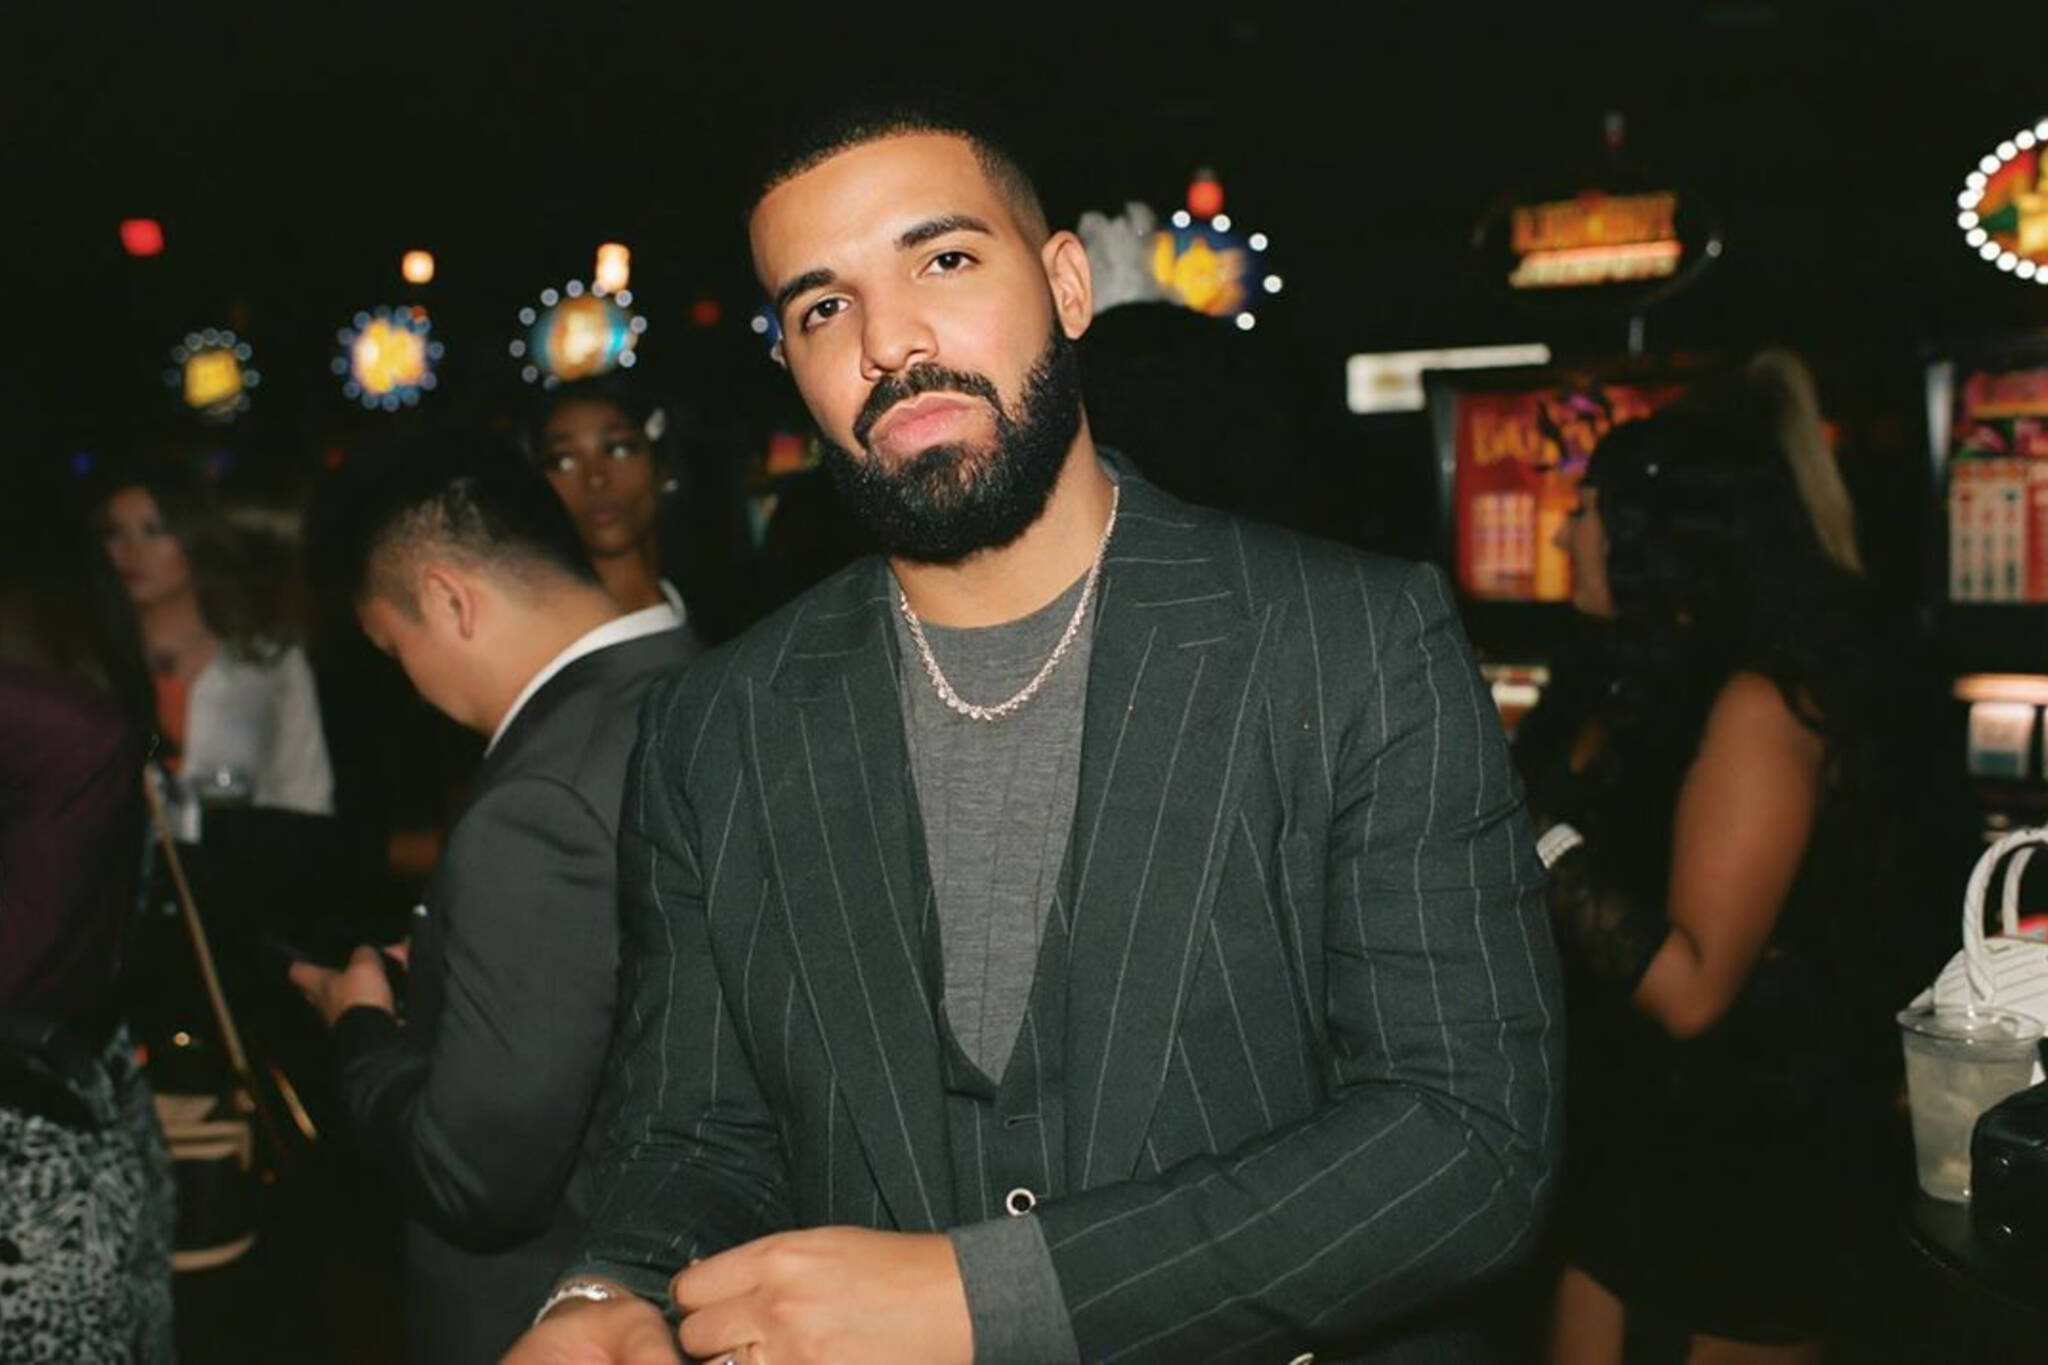 Drake more life